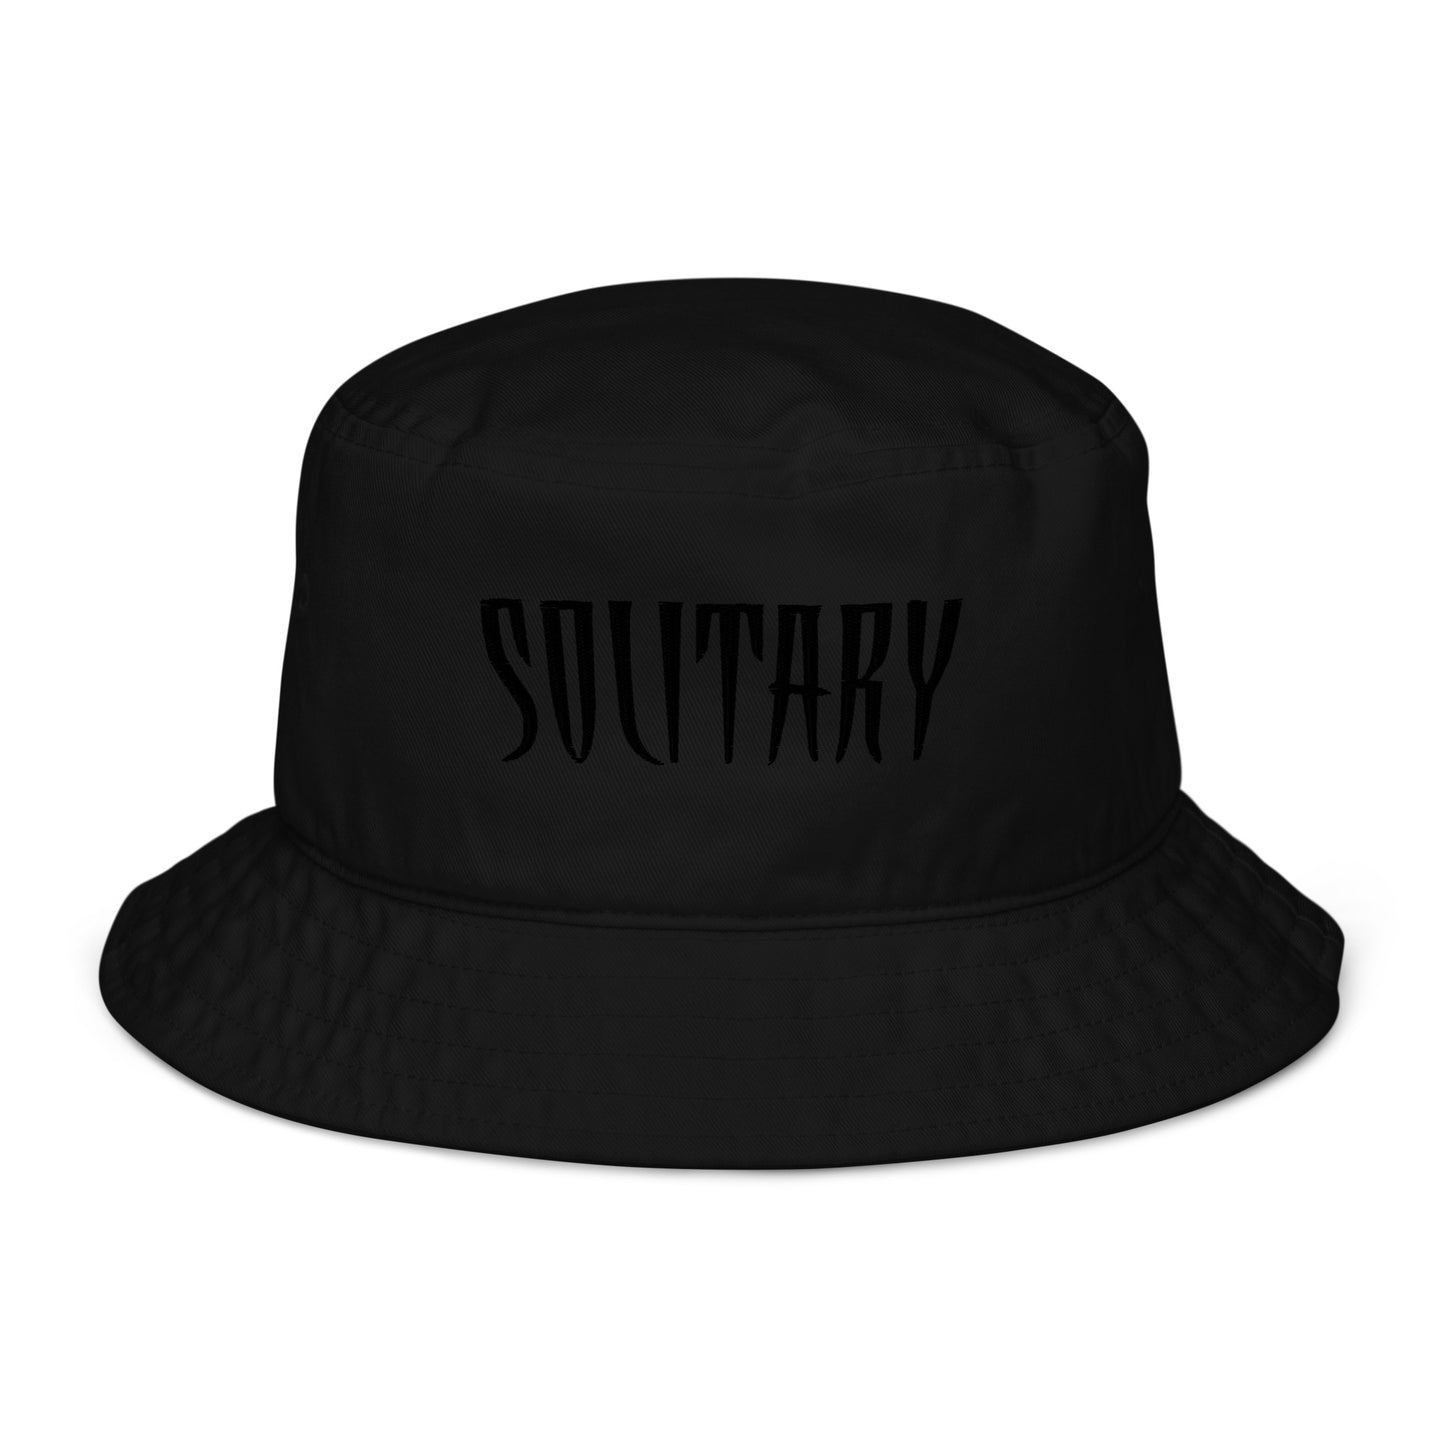 Solitary Bucket hat